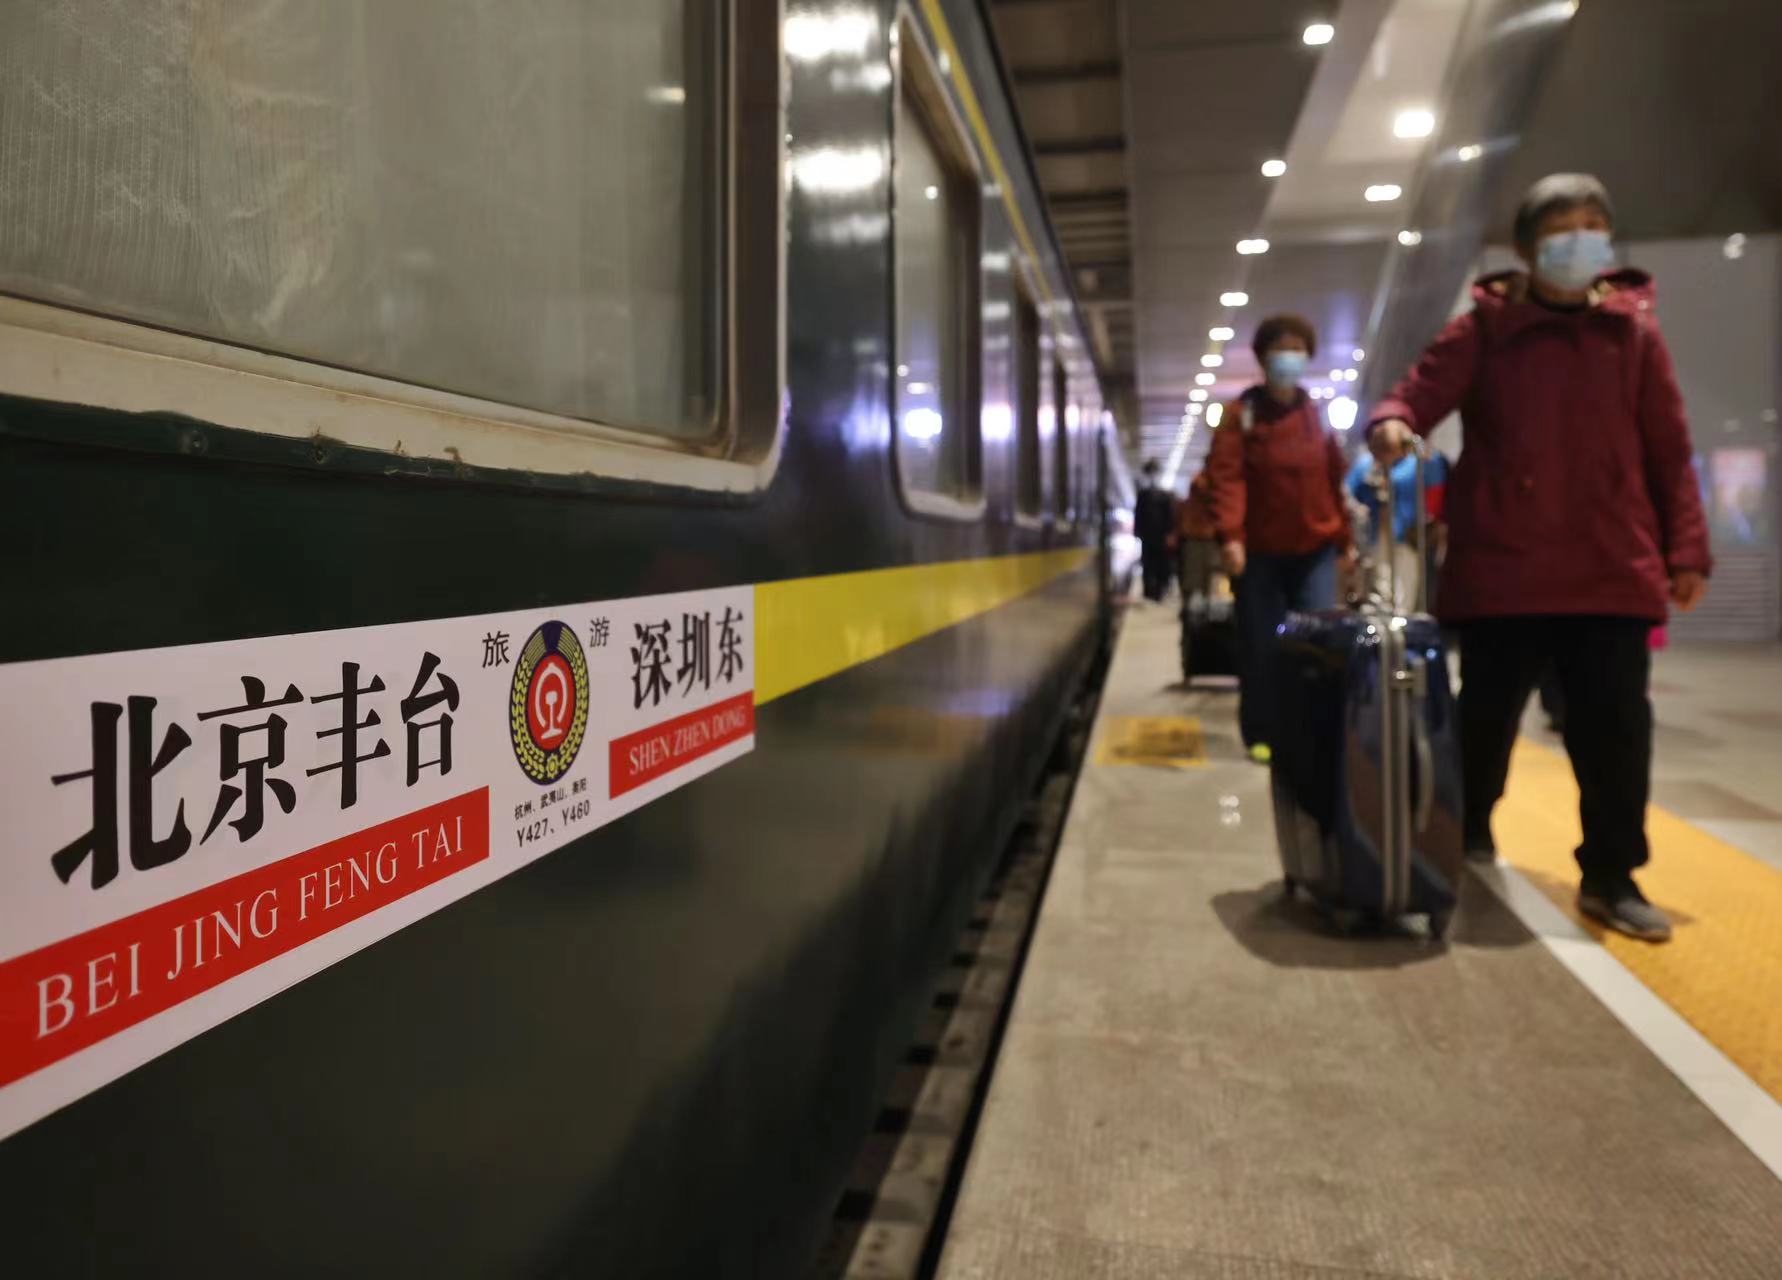 列車到達深圳後，旅客們將乘大巴車前往香港。圖為旅客走在候車站台上。  新京報記者 王貴彬 攝